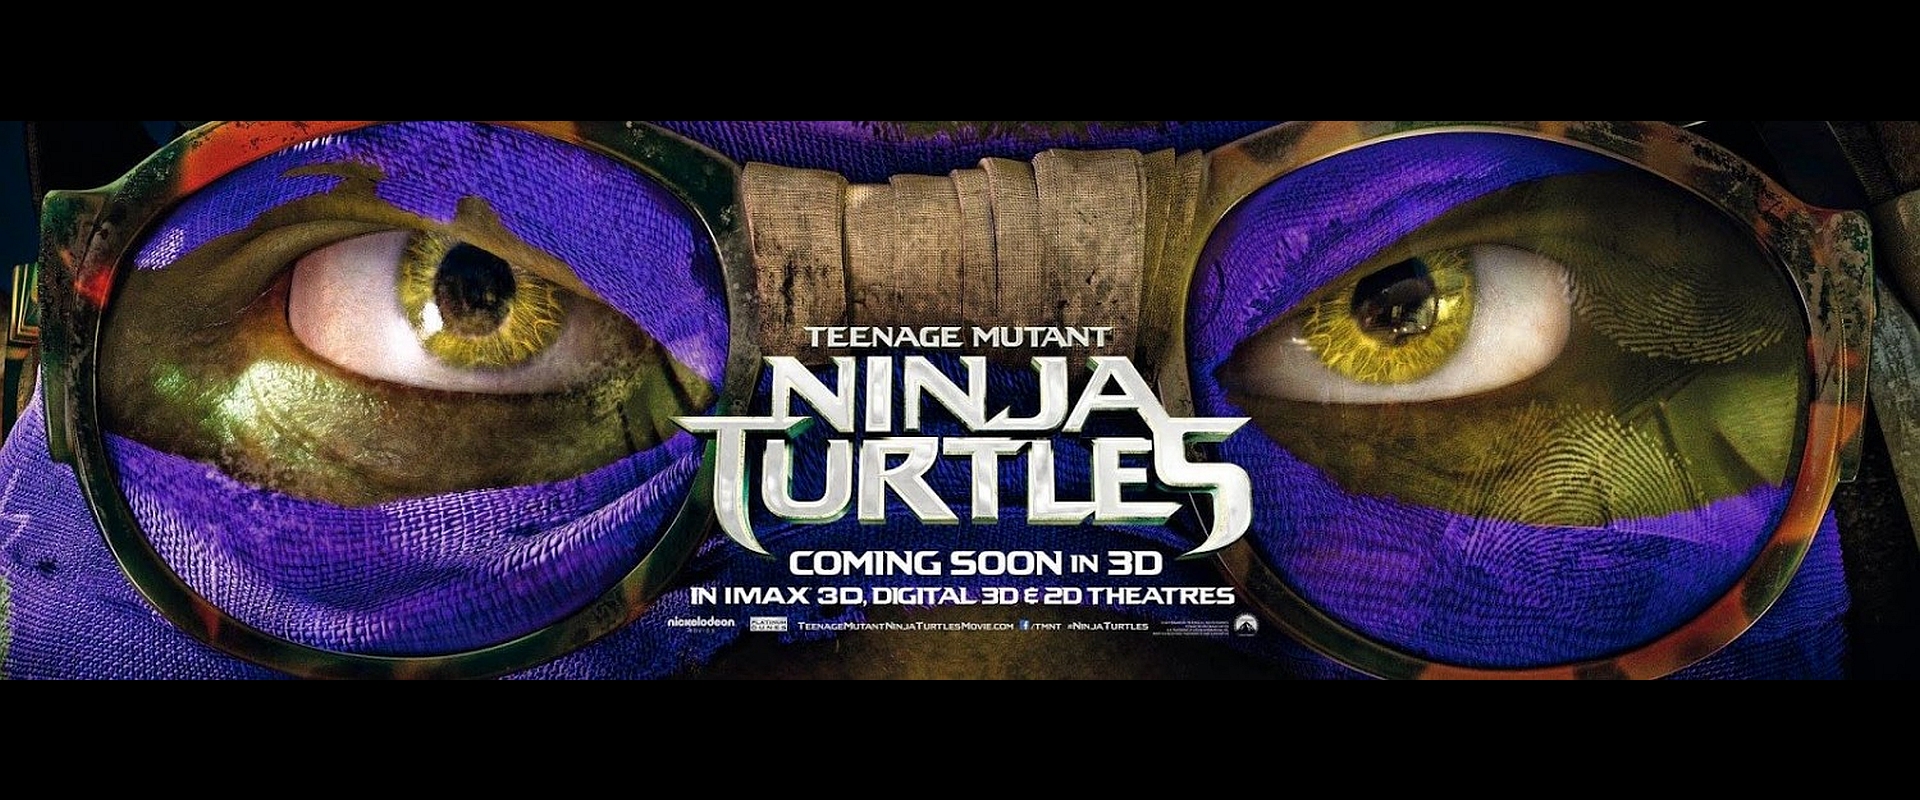 Movie Teenage Mutant Ninja Turtles 2014 1920x800